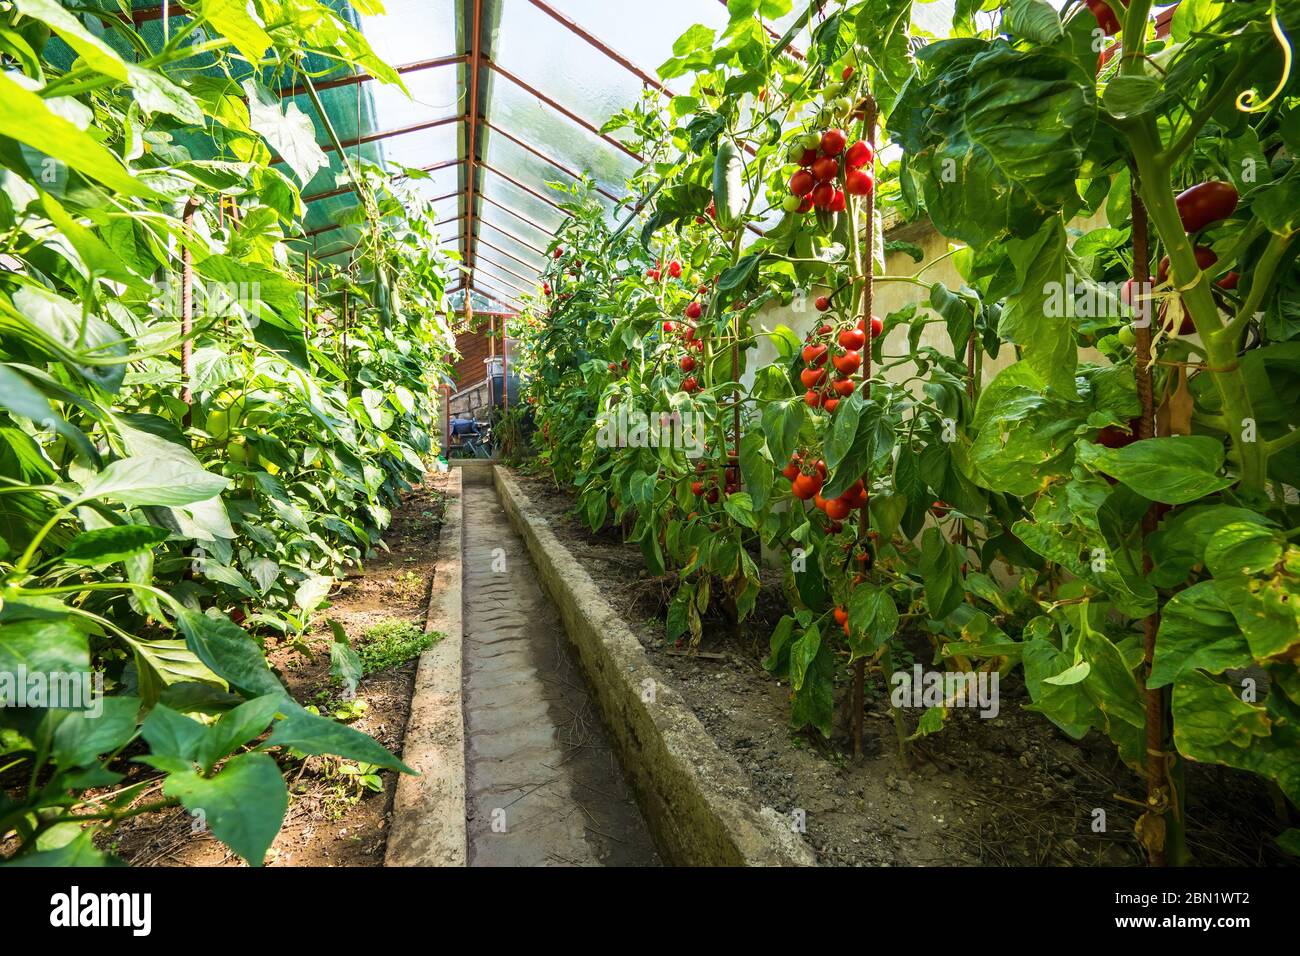 Serre maison avec tomates mûres et concombres en croissance. Bouquet de tomates naturelles rouges fraîches sur une branche dans un potager biologique. Flou Banque D'Images